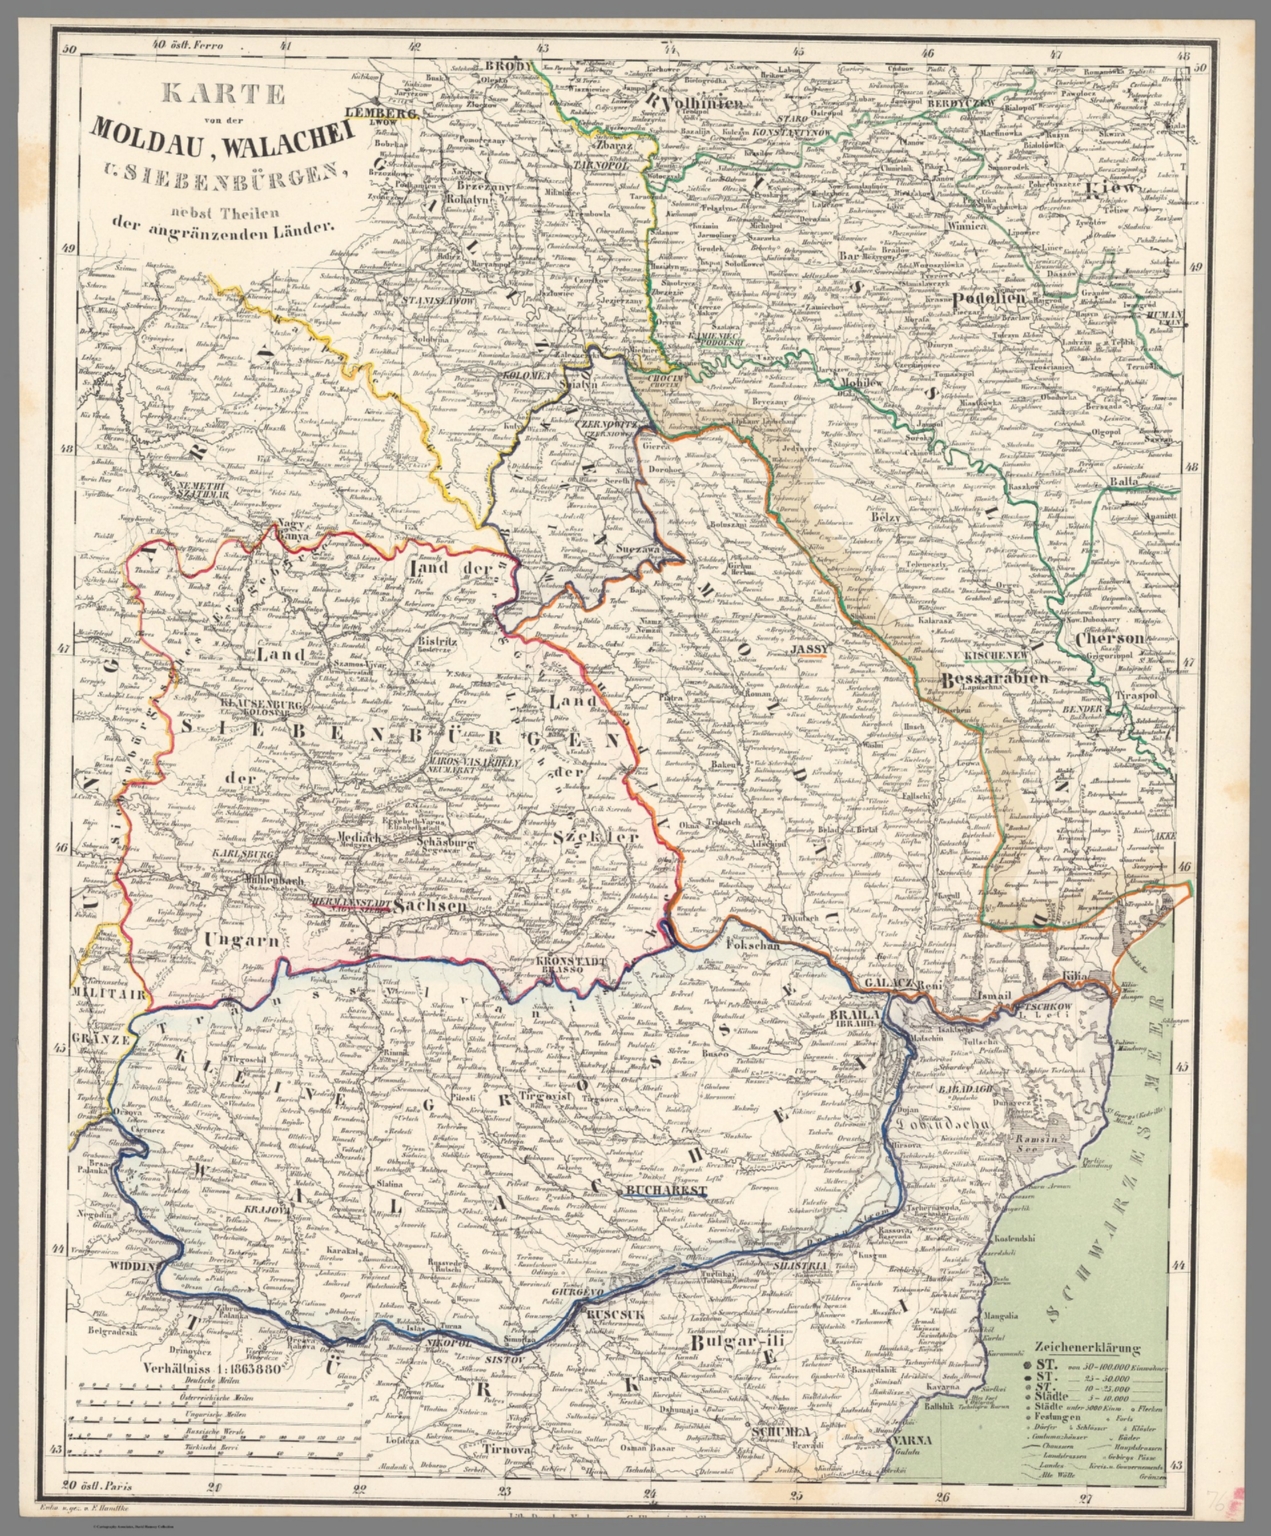 No. 76. Karte von der Moldau, Walachei u. Siebenburgen - David Rumsey